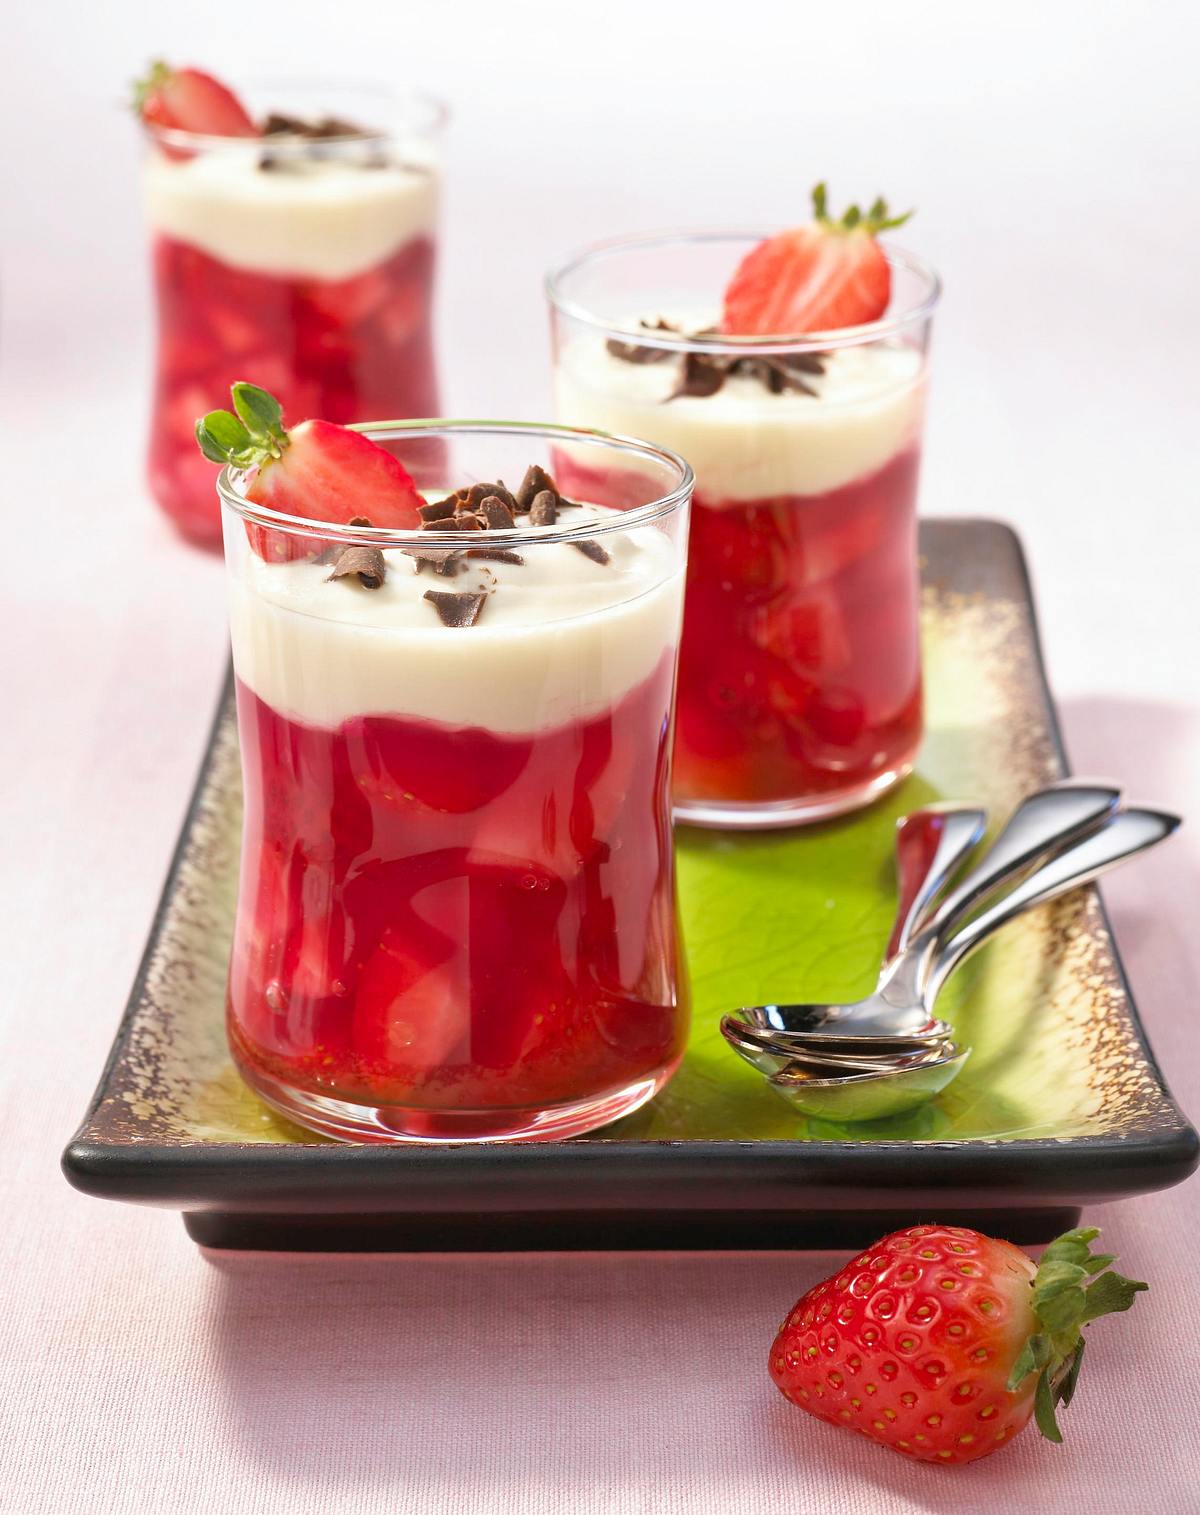 Erdbeer-Grütze mit Joghurthaube Rezept